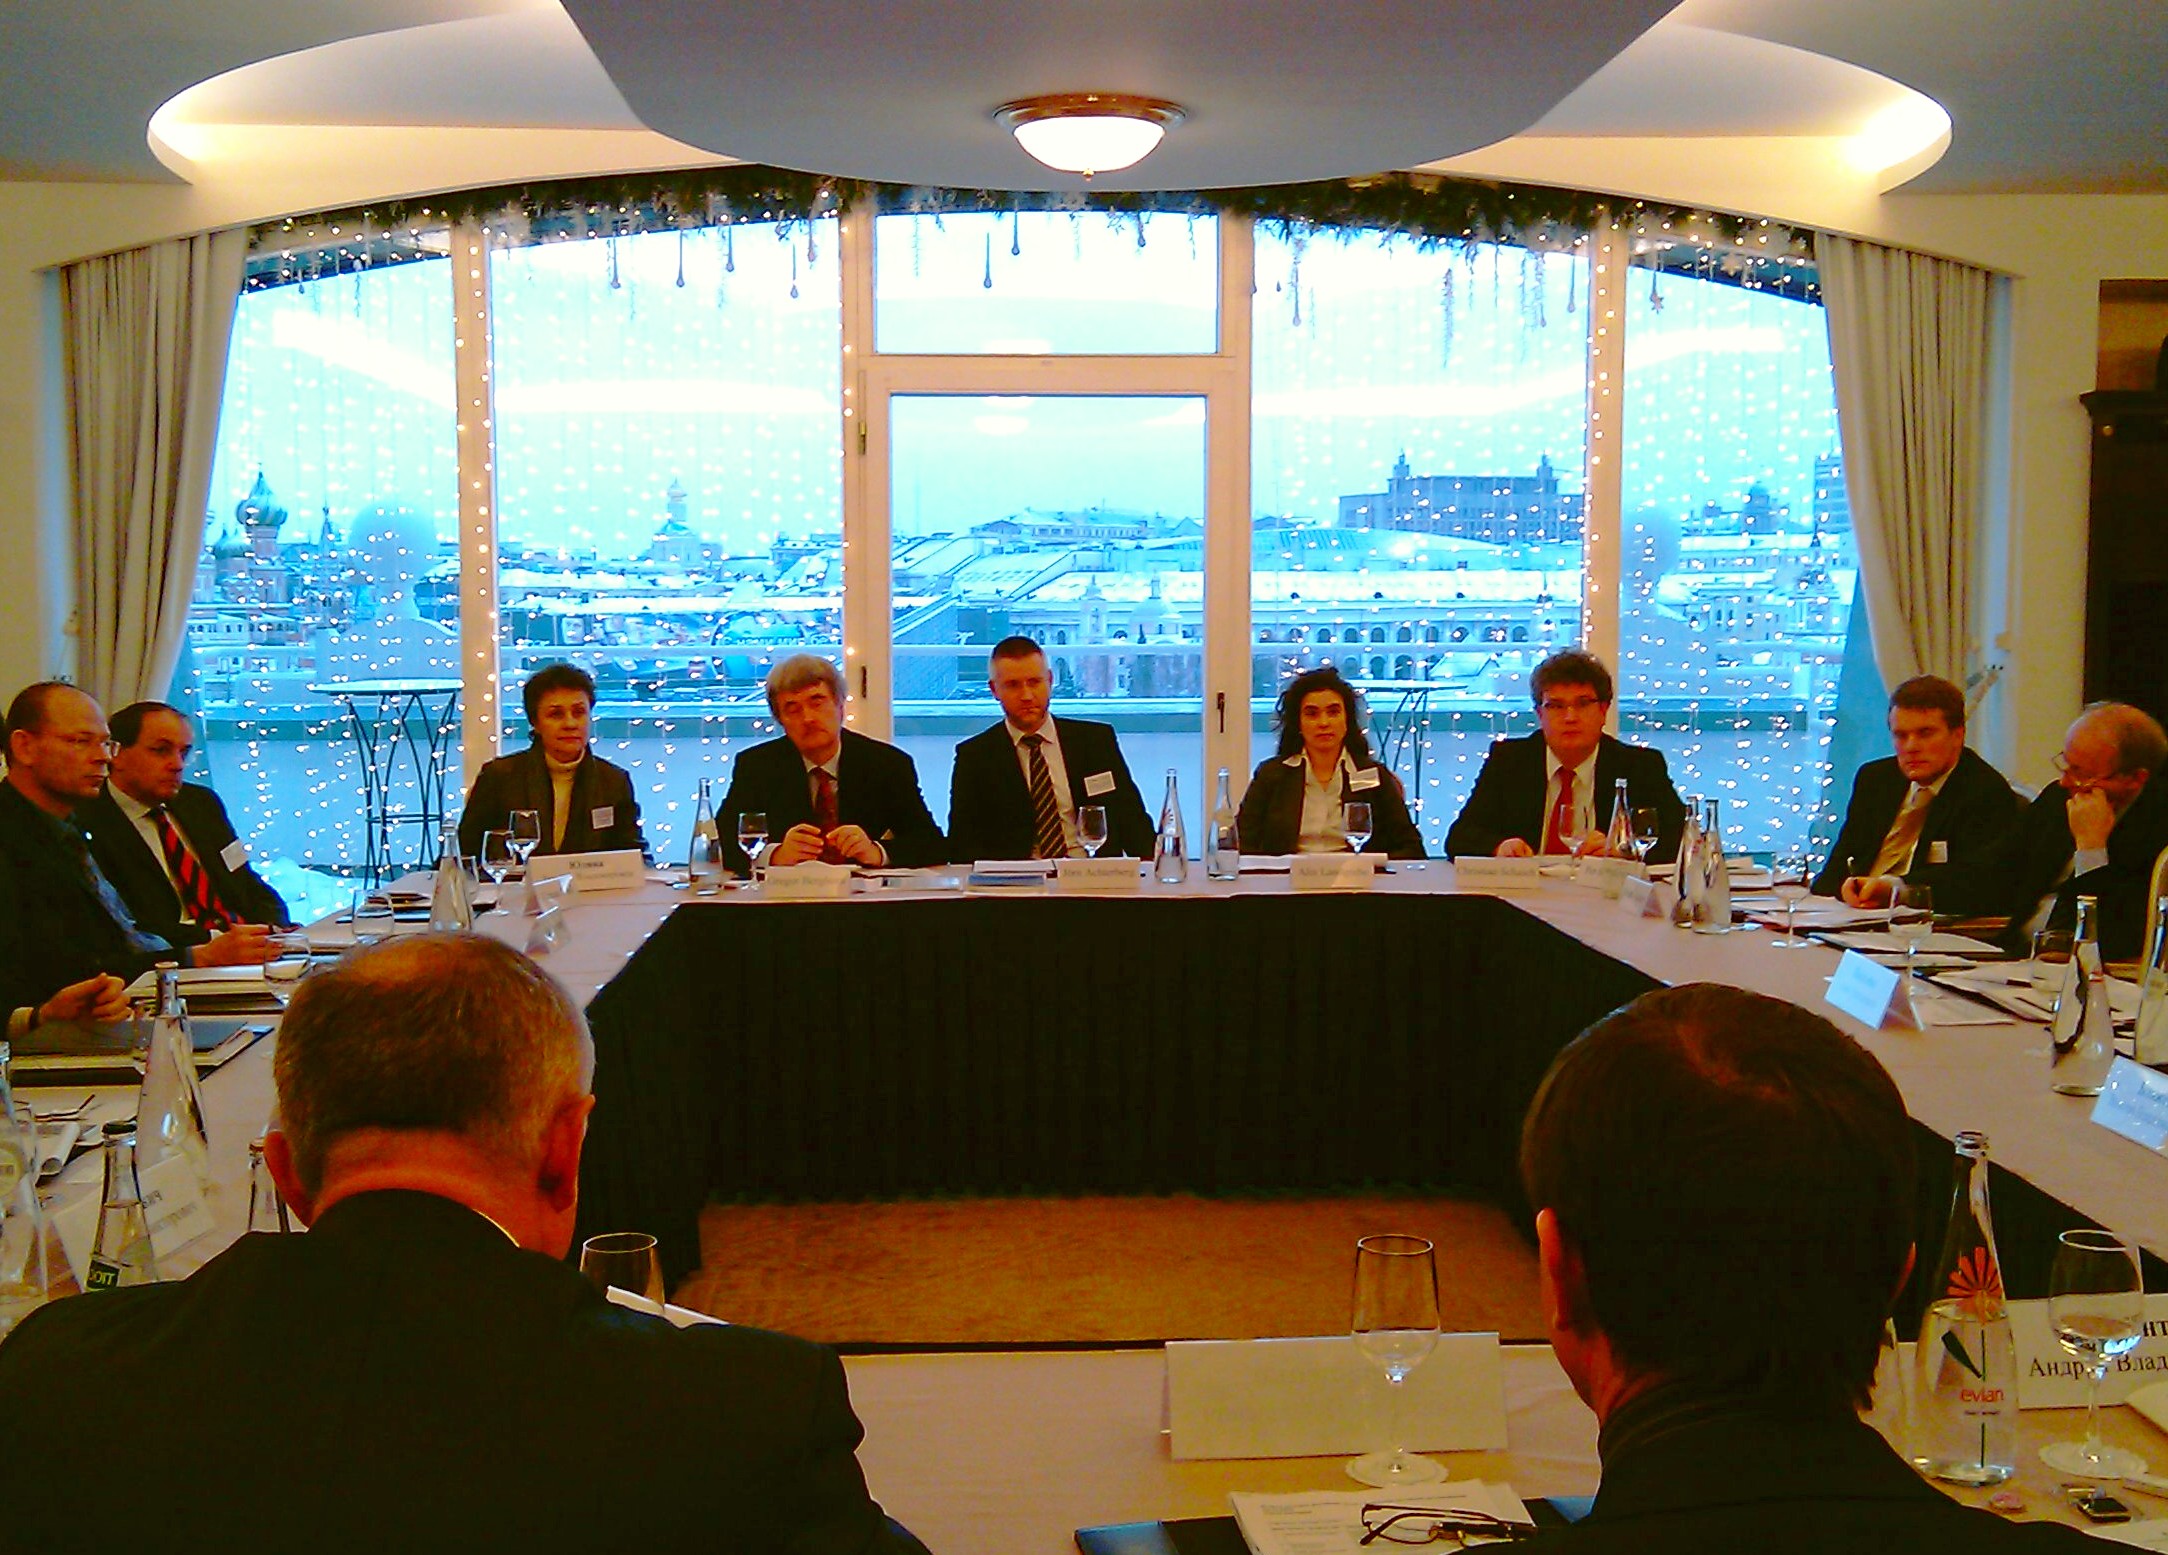 Слева направо: Карстен Хайнц, Томас Гёбель (посольство Германии), Татьяна Юдина (AvH), Грегор Бергхорн (DAAD), Йорн Ахтерберг (DFG), Аликс Ландгребе (DWIH), Кристиан Шайх (DFG), Пер Бродерсен (AvH), Николаус Катцер (DHI)